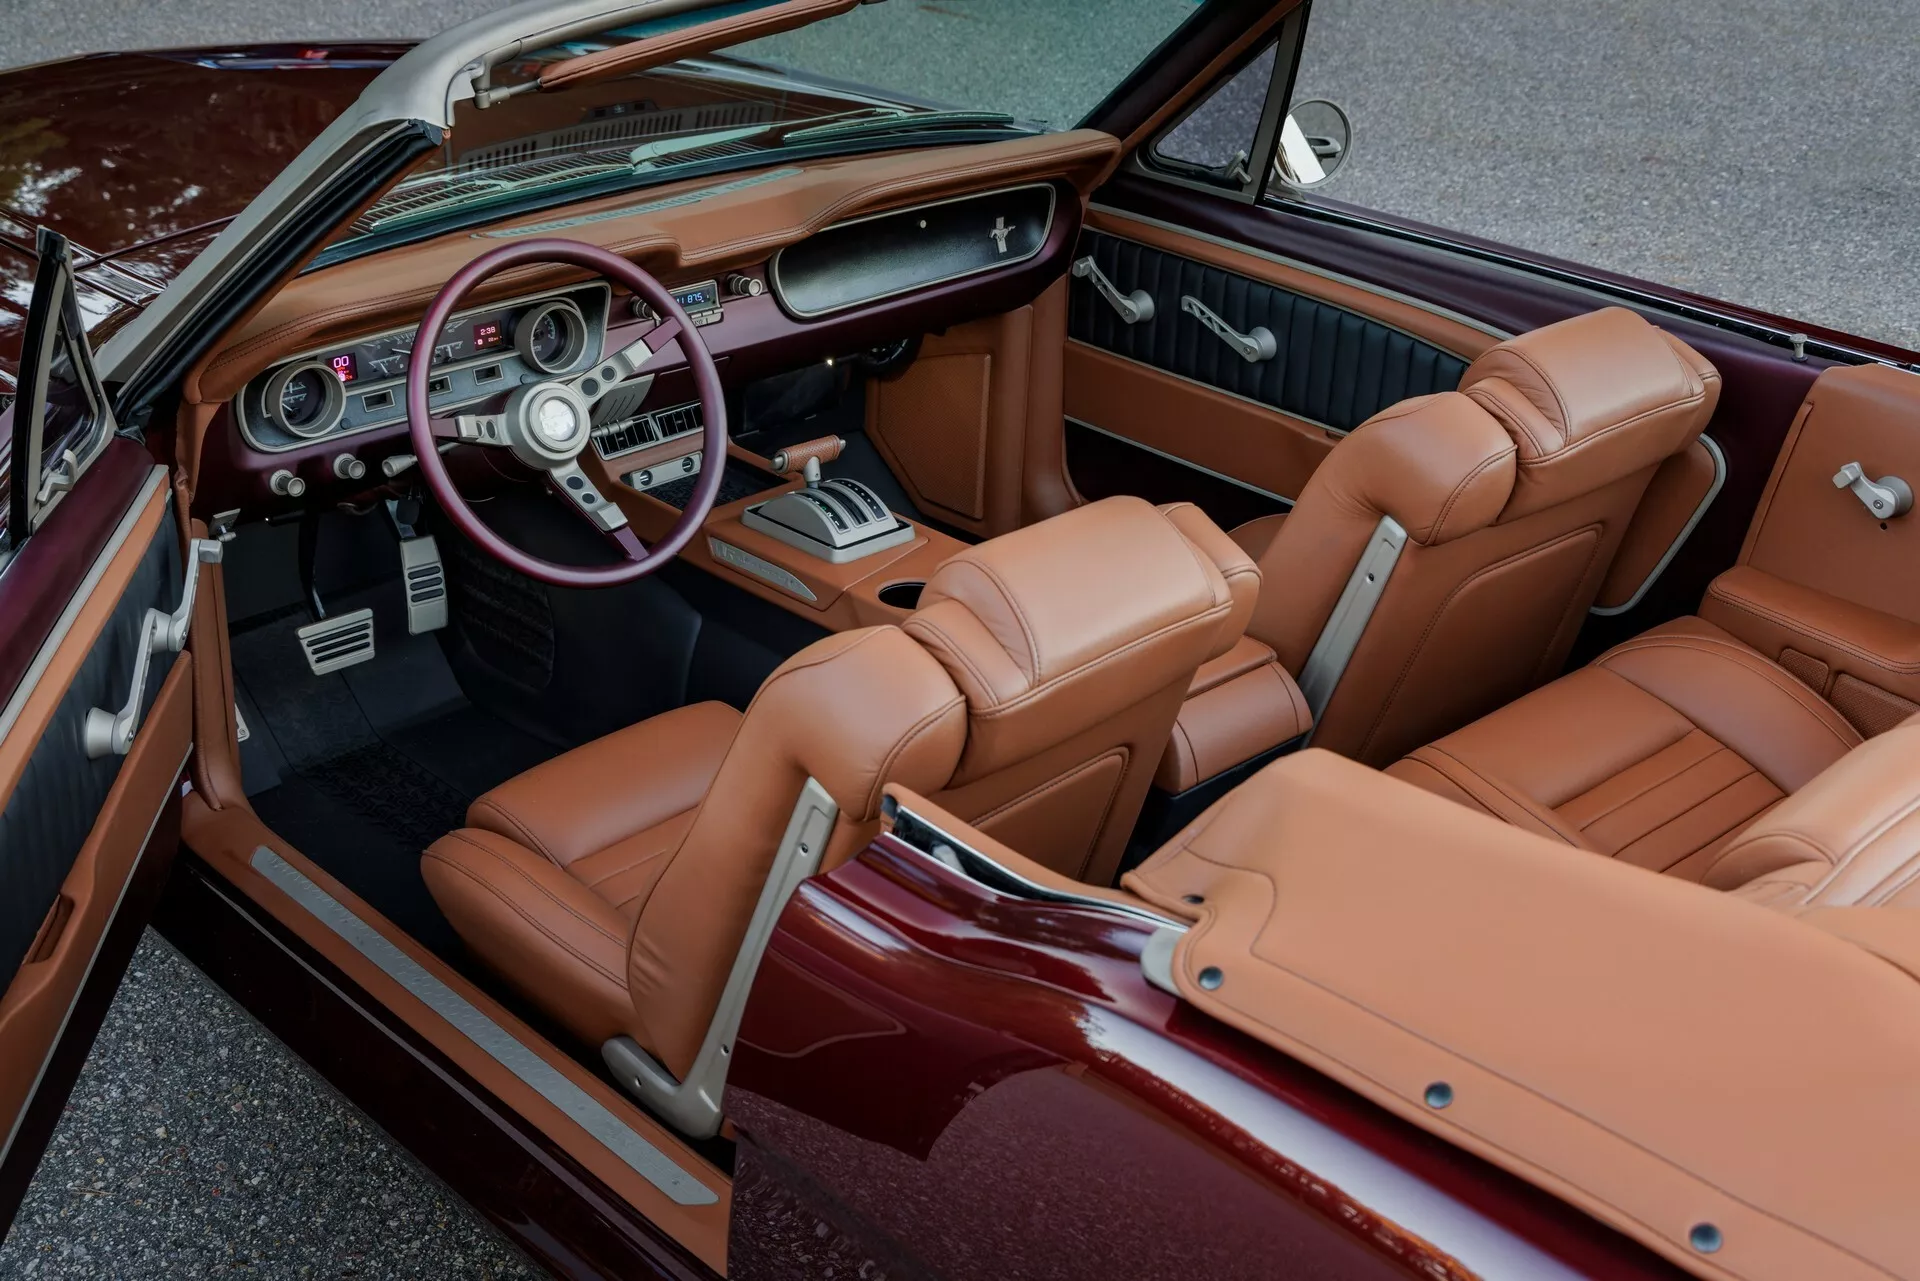 تدشين واحدة من أجمل سيارات فورد موستنج الكلاسيكية في معرض سيما الأمريكي بمحرك 8 سلندر عصري 6